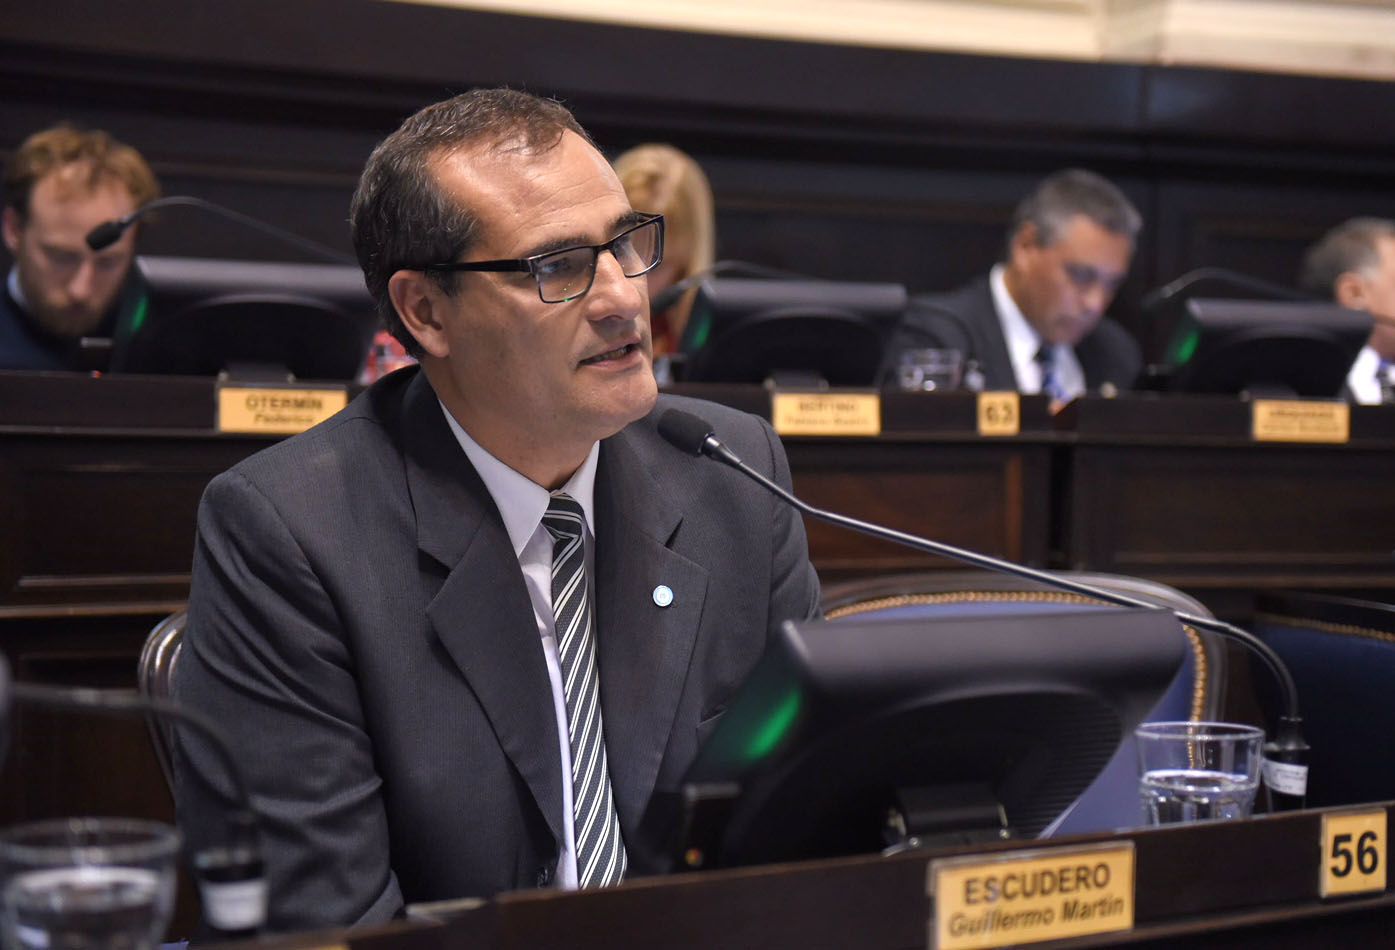 Guillermo Escudero promete bajar las tasas en La Plata porque "se tornaron abusivas”